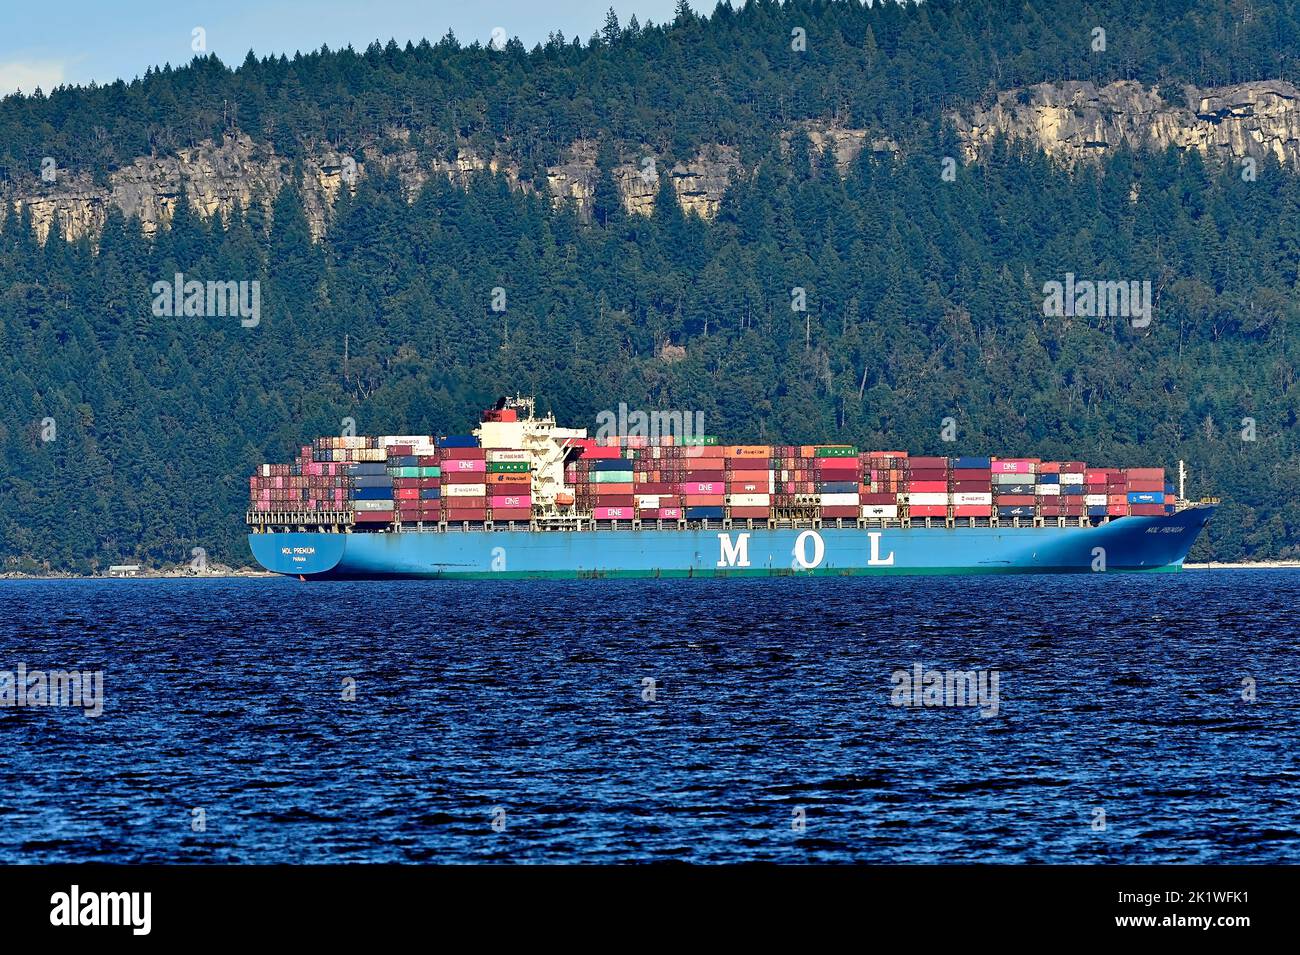 Ein Seeschiff, das mit Containern beladen ist und auf die Möglichkeit wartet, seine Ladung im Hafen von Vancouver, British Columbia, Kanada, zu entladen. Stockfoto